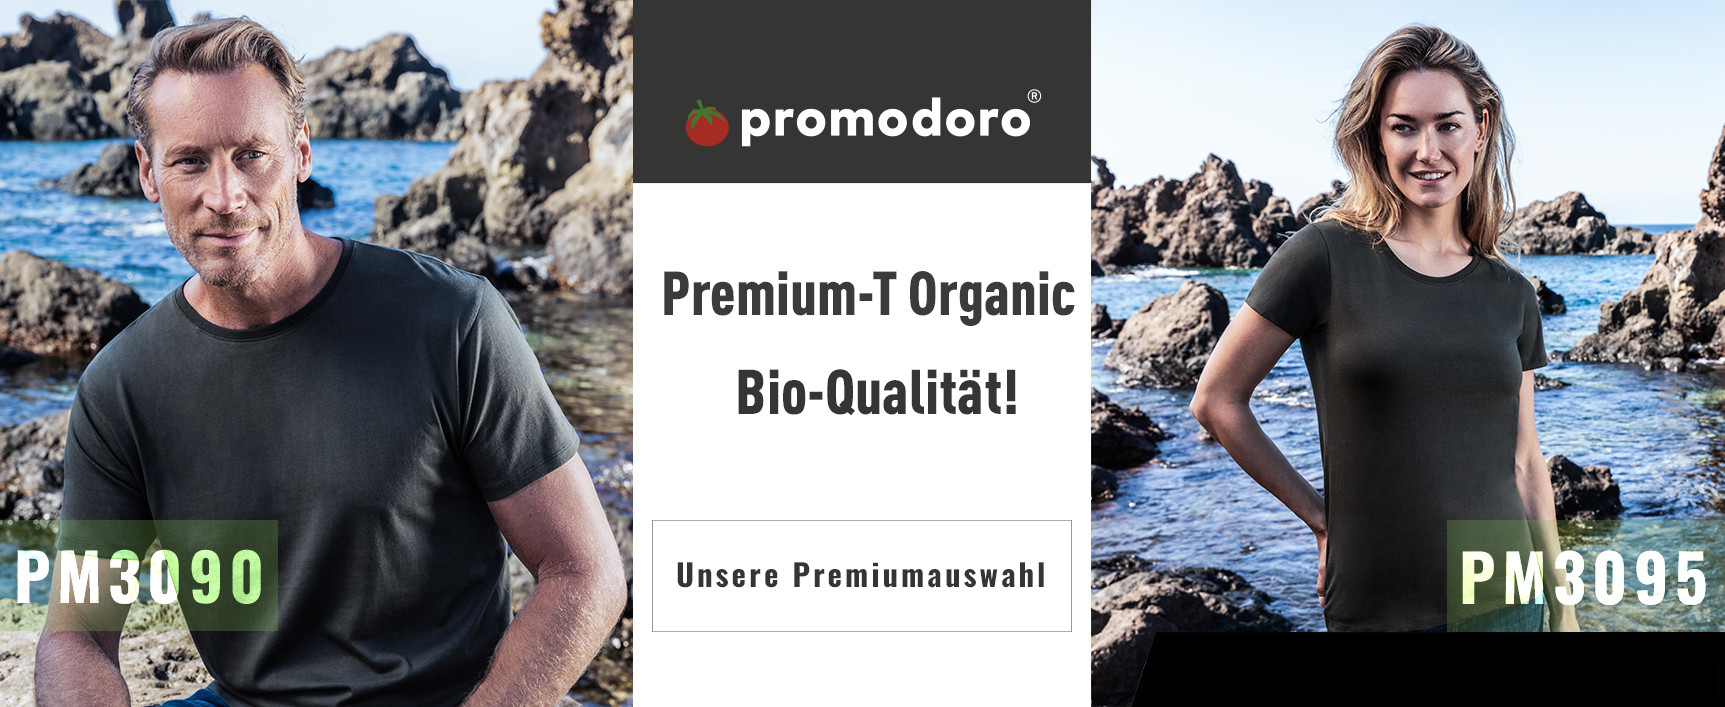 Promodoro - Premium-T Organic